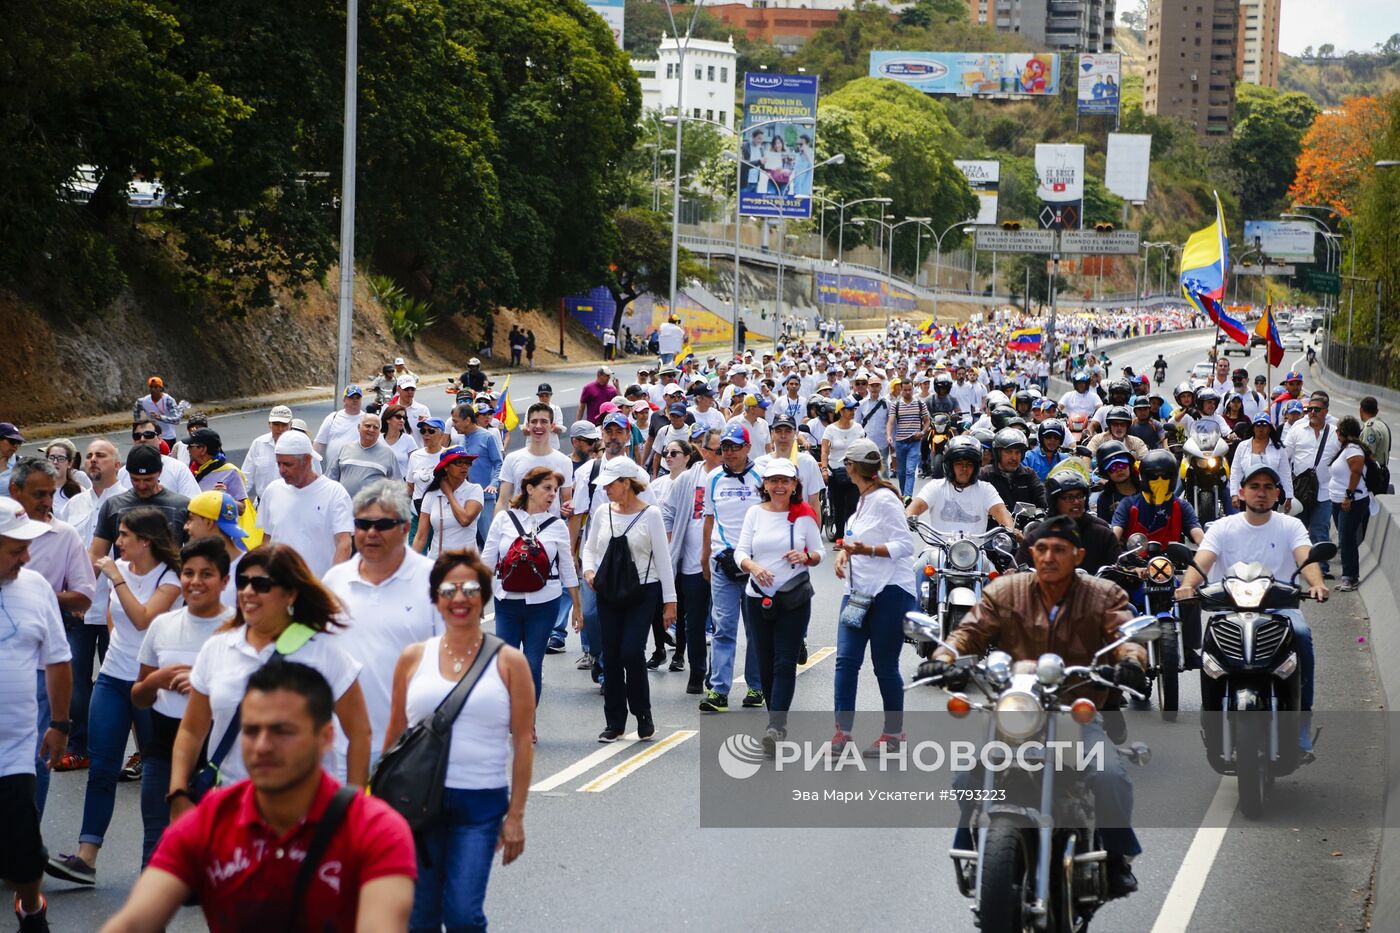 Акция оппозиции в Каракасе